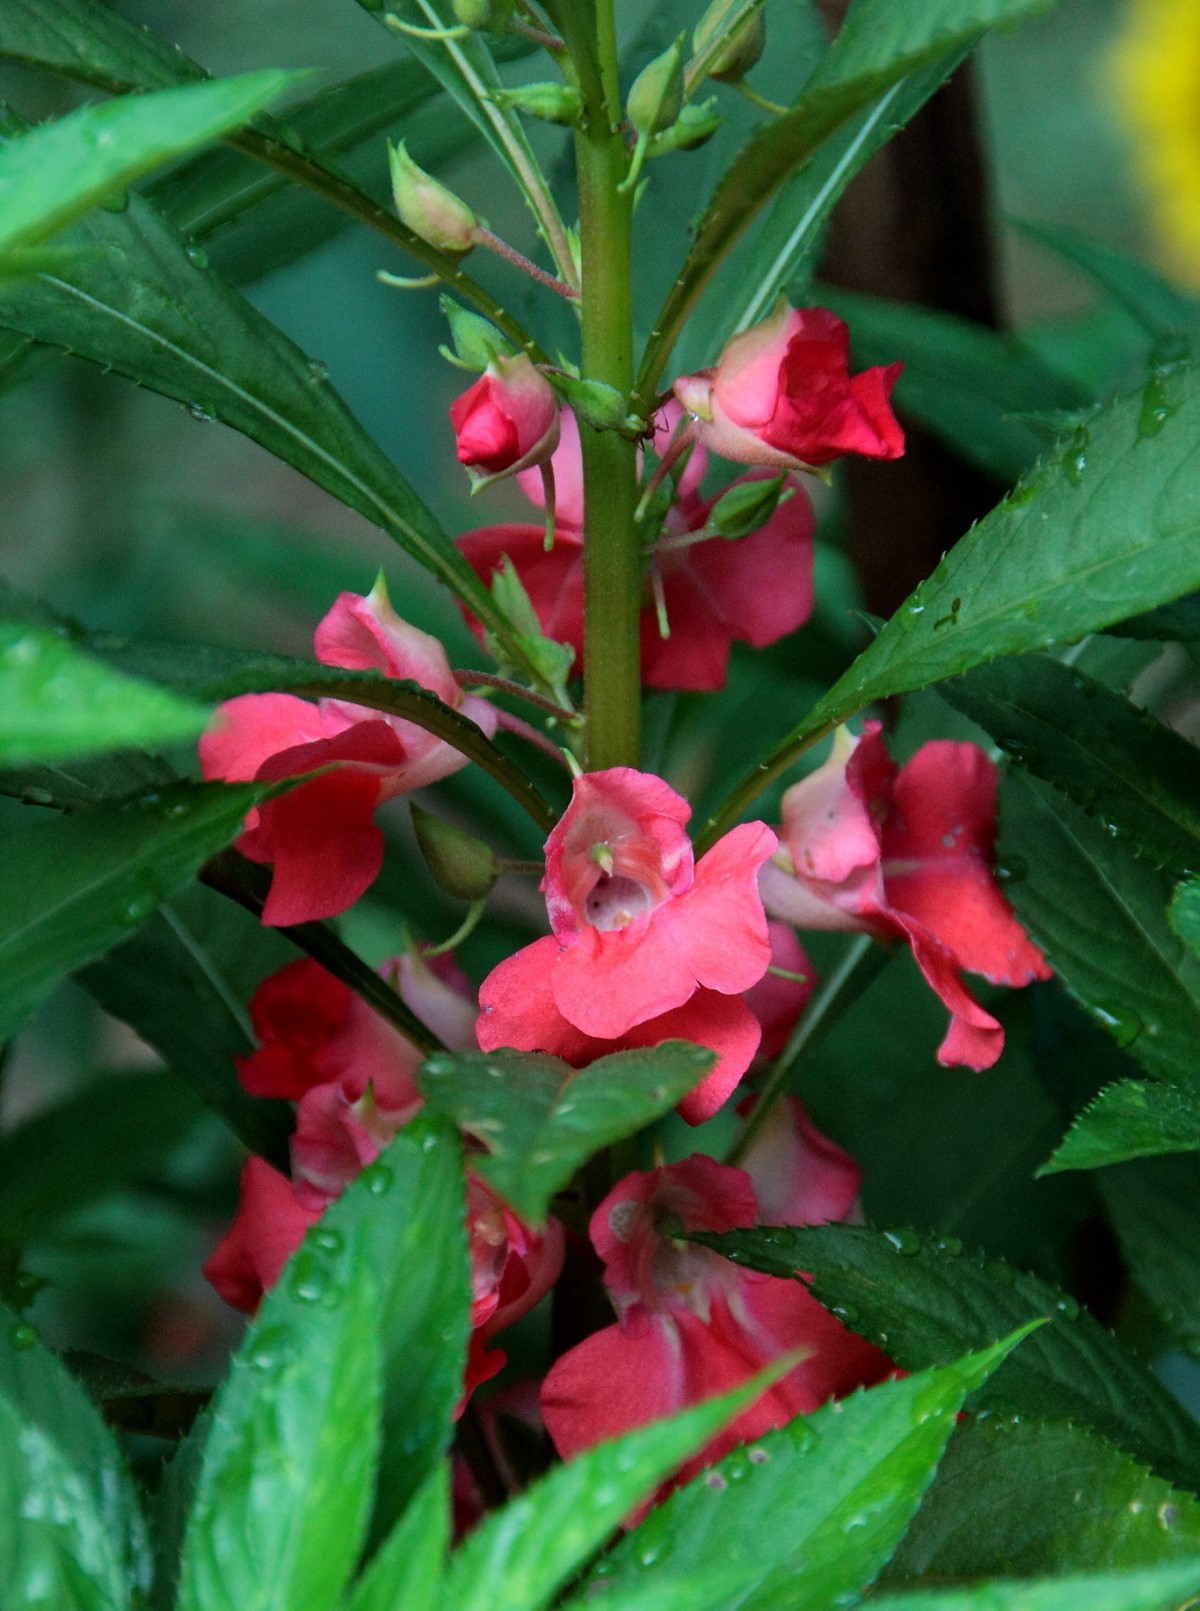 O beijo-de-frade é uma planta de ciclo anual, podendo ser cultivada no decorrer do ano todo (Foto: Flickr/ Paul Braynard / CreativeCommons)